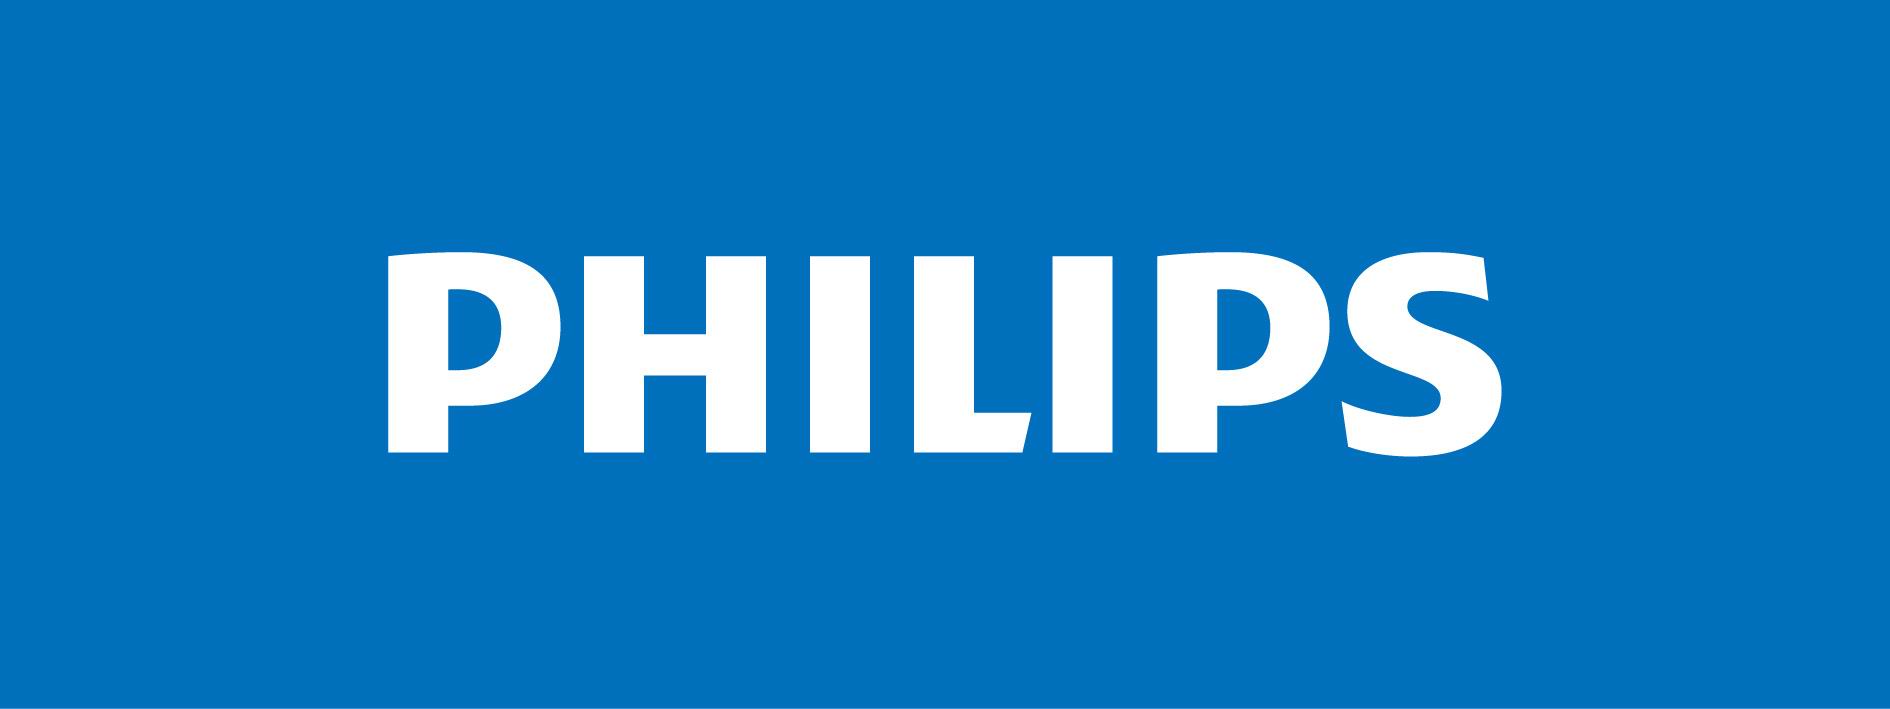 логотип бренда Philips